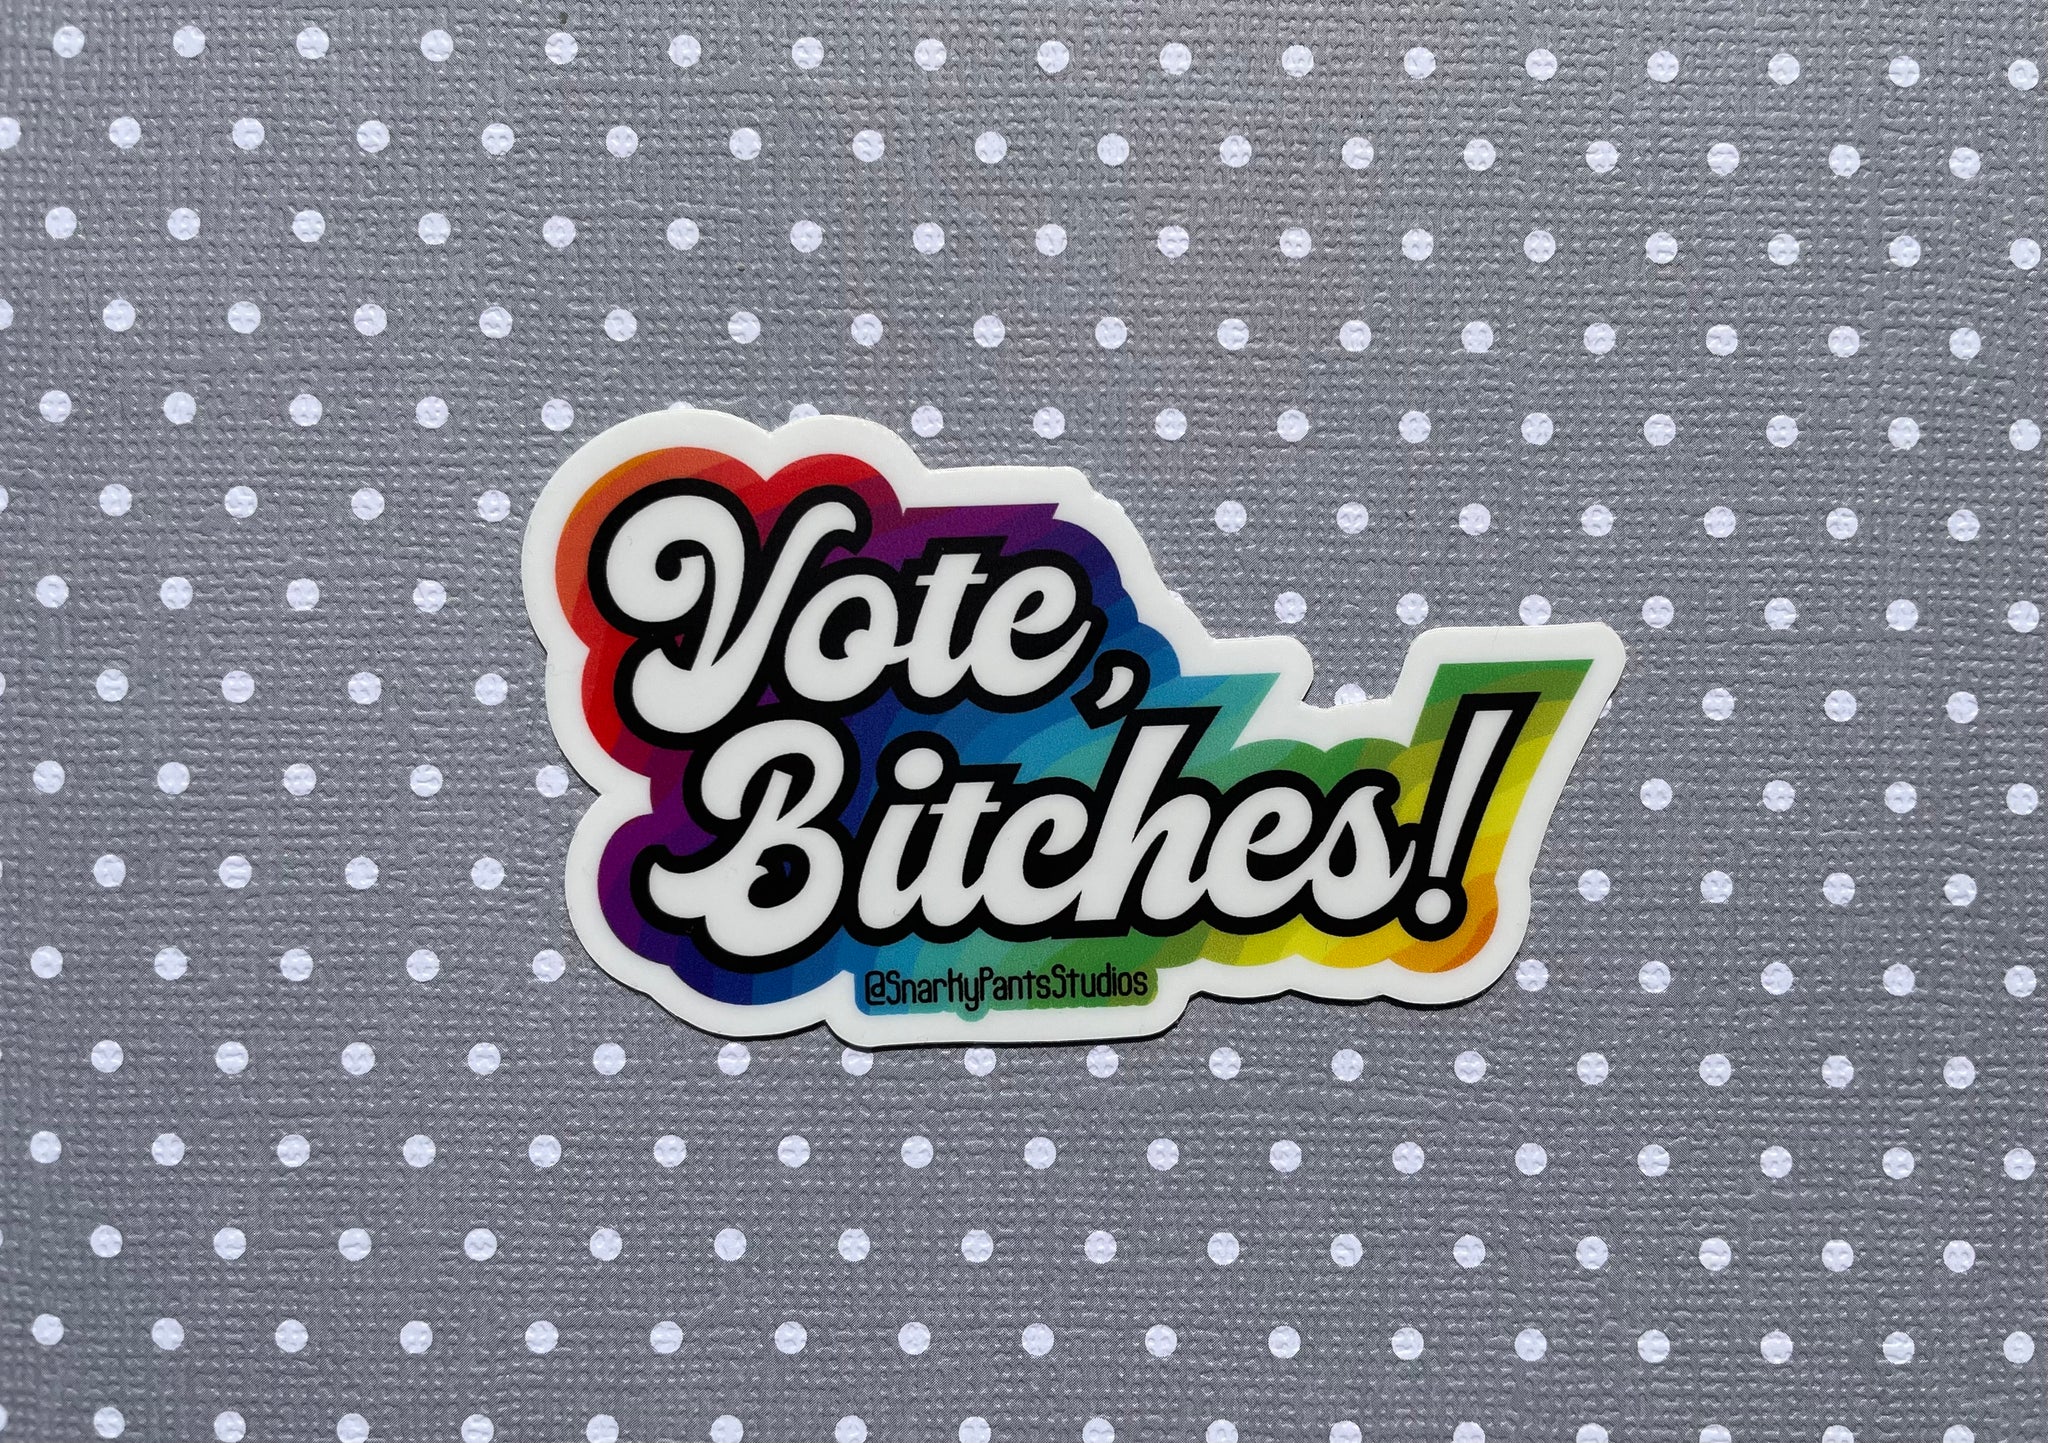 Vote, bitches! Sticker Rainbow